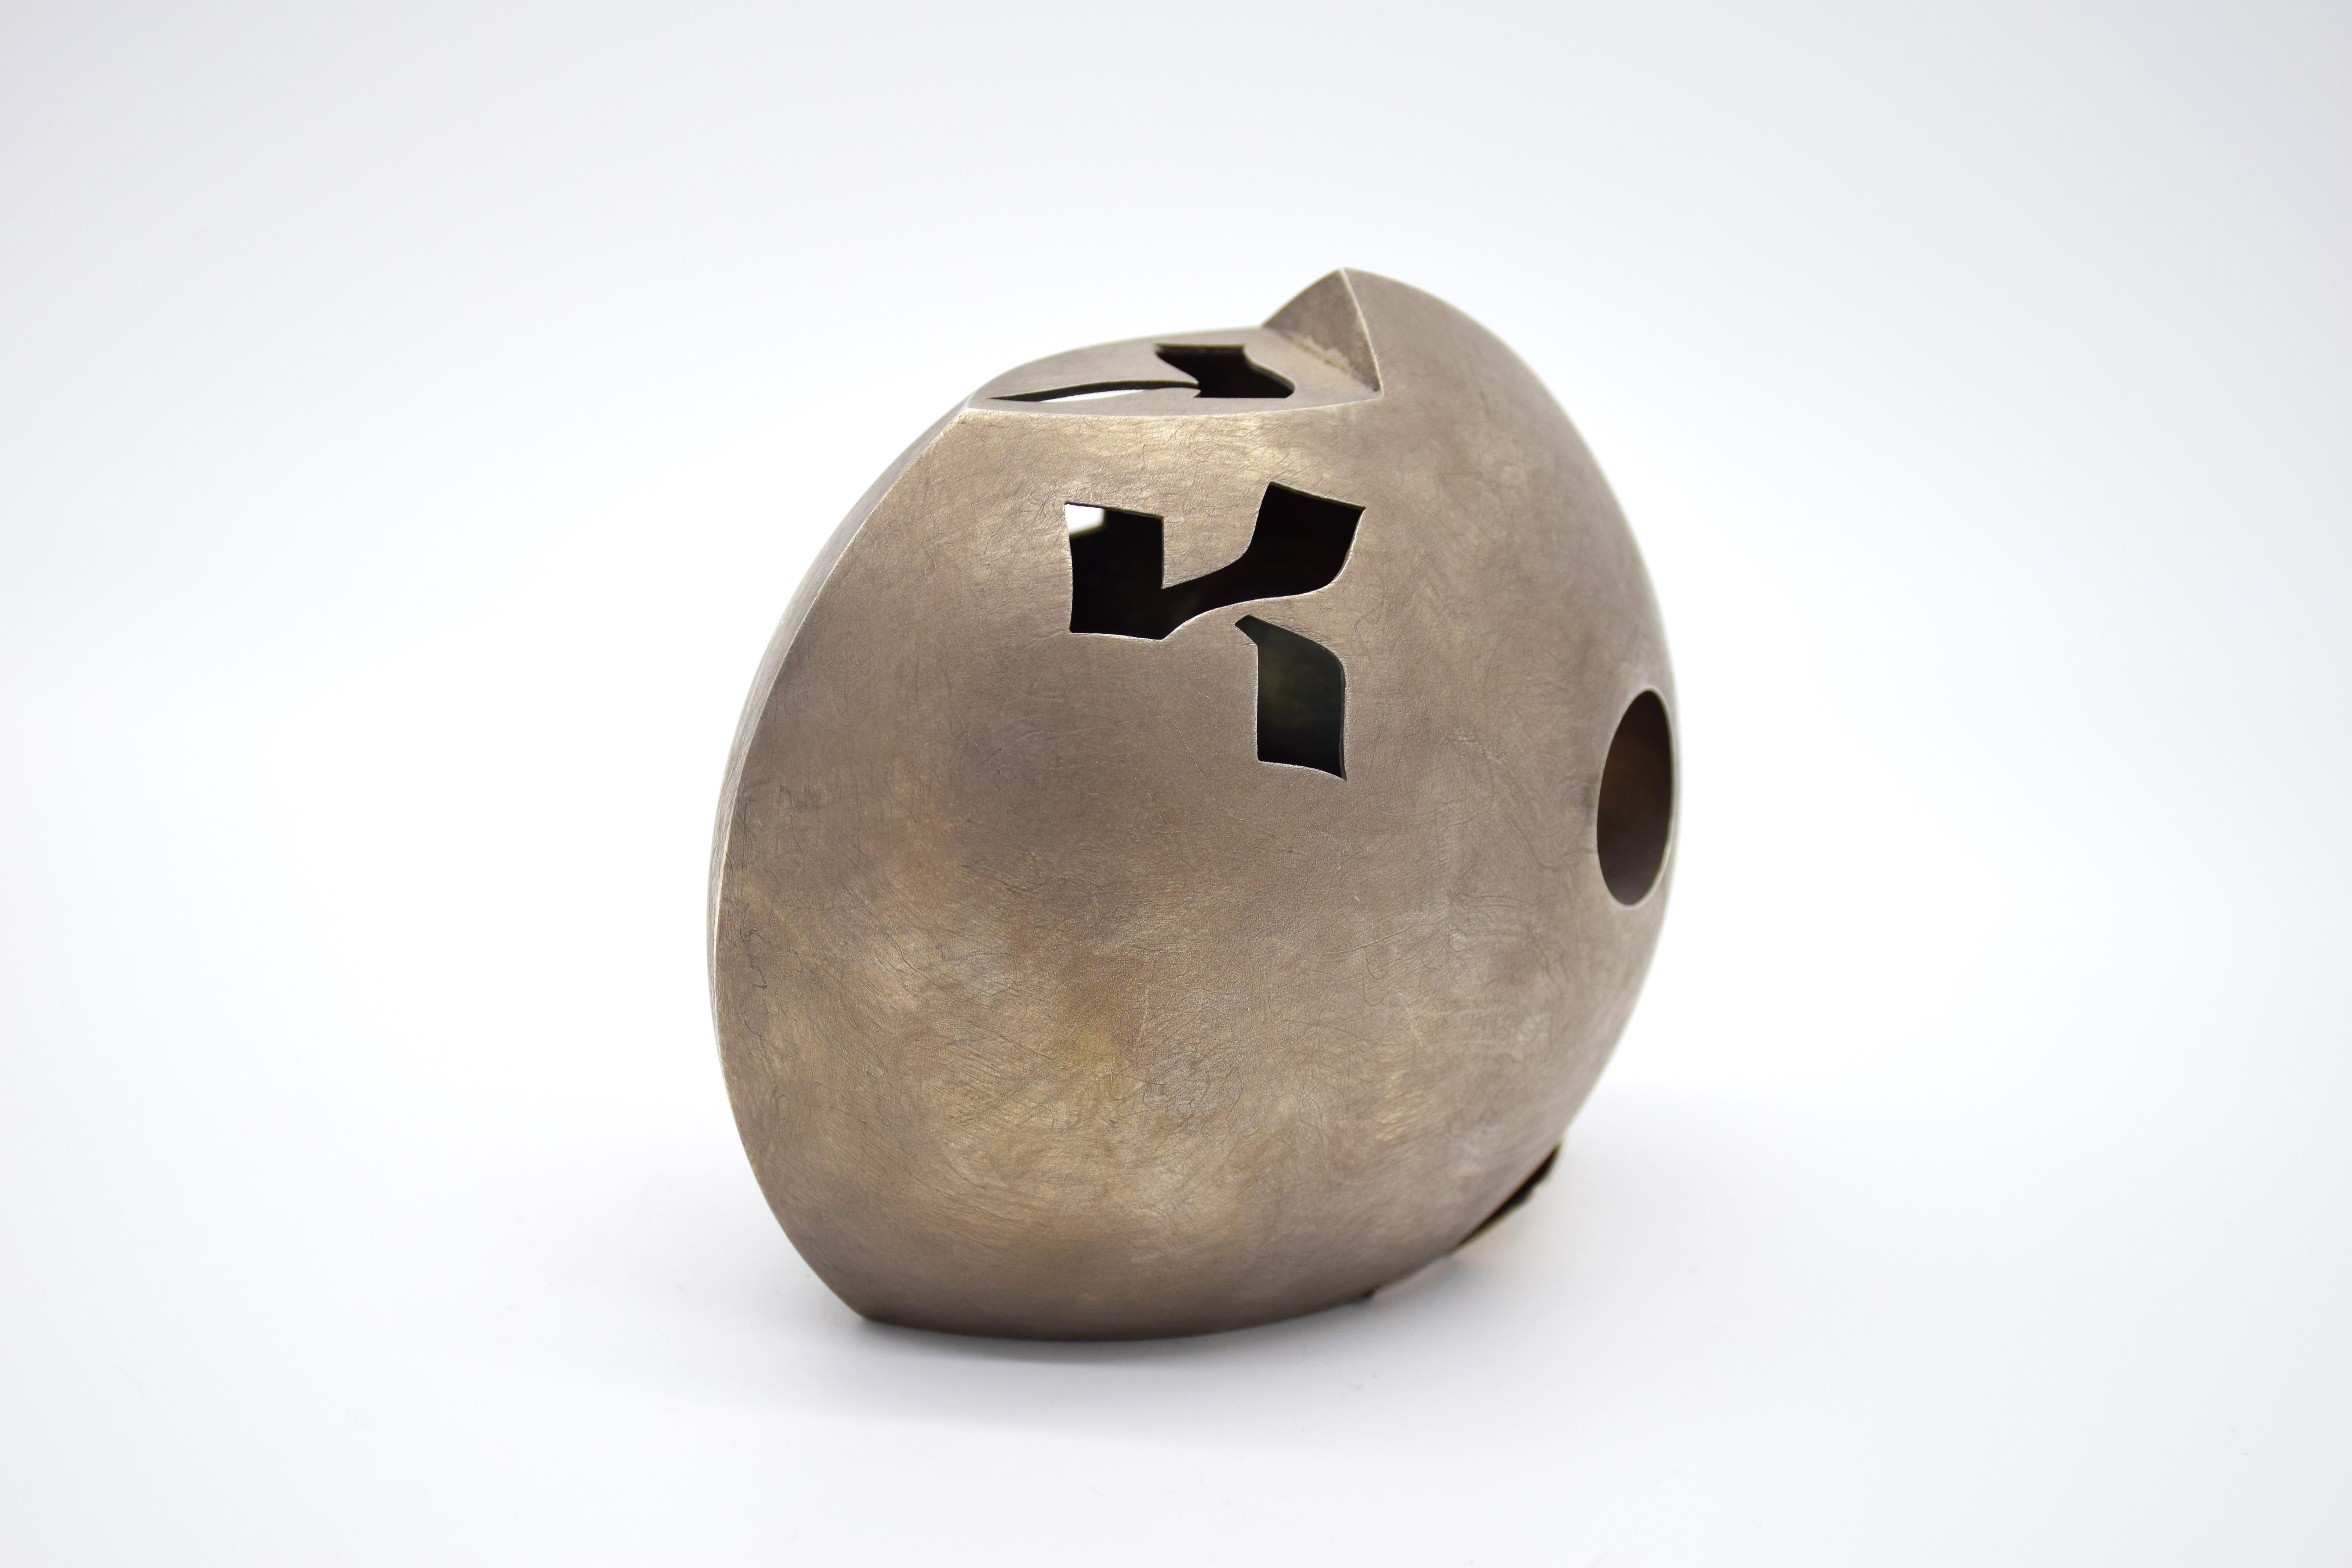 Tzedakah-Box in abgeflachter Eiform (runde Fischform), erstaunlich schlankes und modernistisches Design. einfach ein Meisterwerk des Designs.
Durchbohrt mit stilisierten hebräischen Worten für Charity oder 